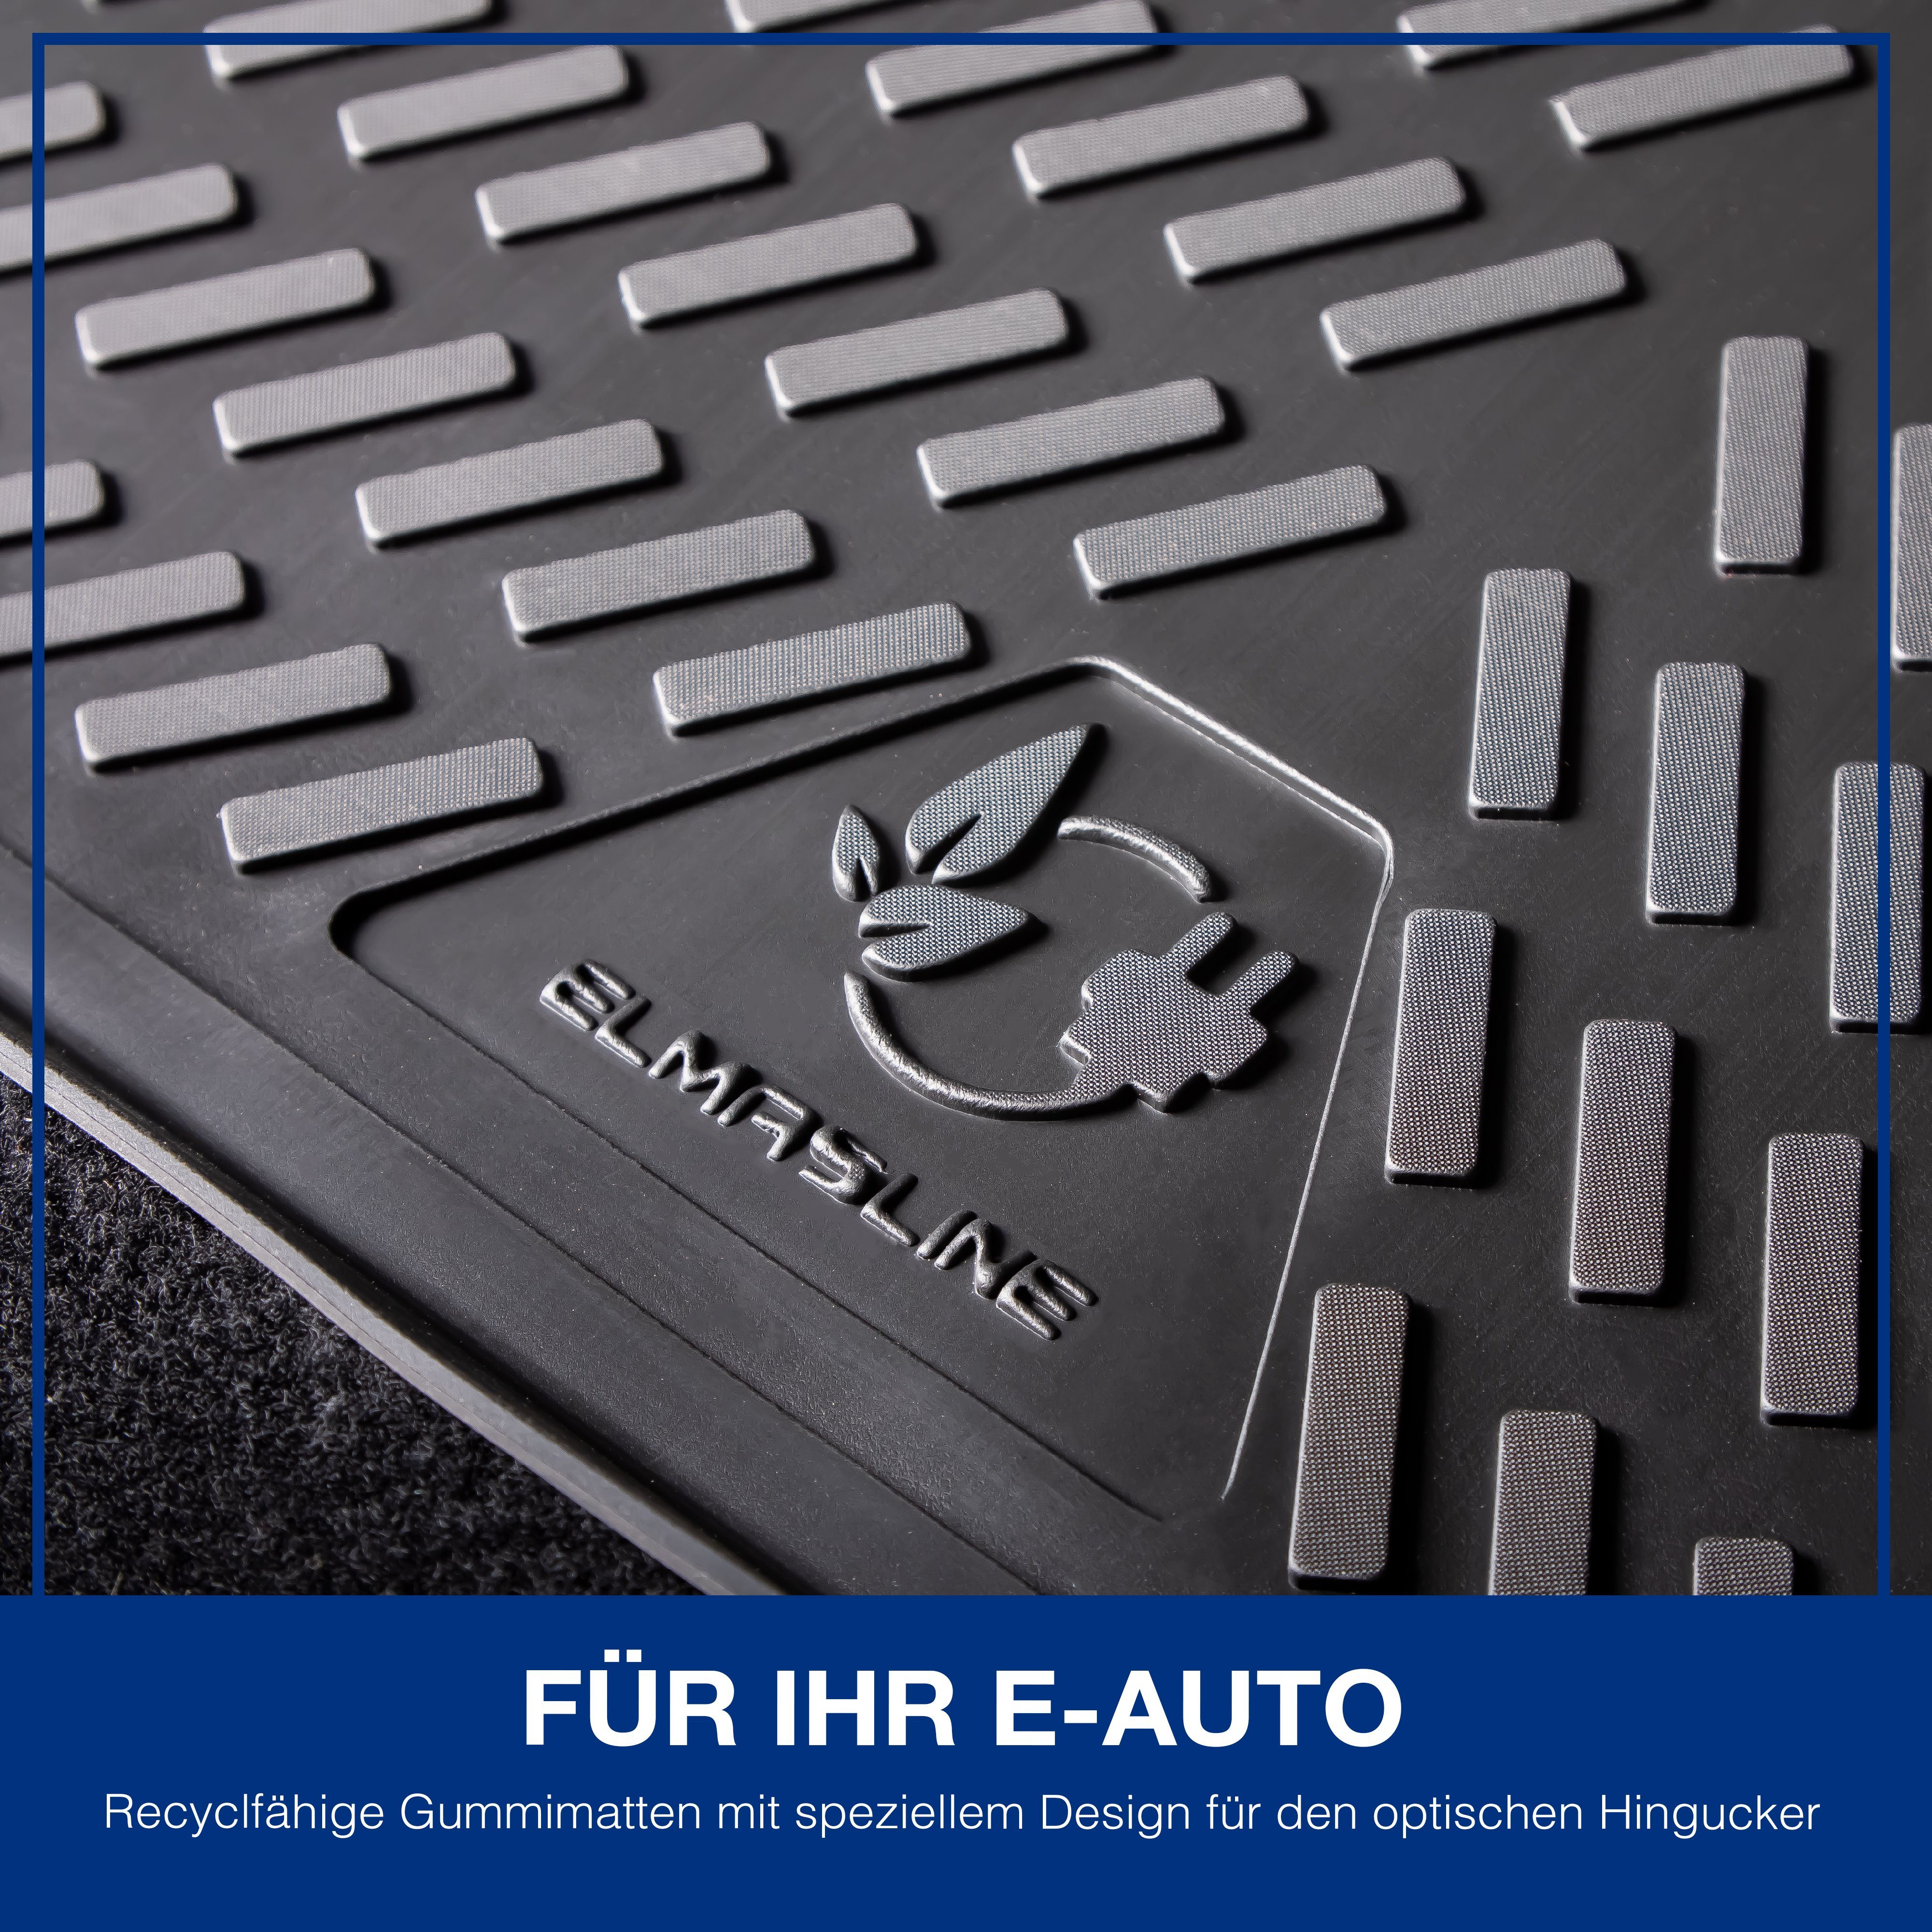 Zubehör Extra Ladeboden) Rand hoher Gummimatten ELMASLINE & (Standard für Kofferraumwanne (5 St), ID.4, - für ID.4 VW 3D VW Passform-Fußmatten